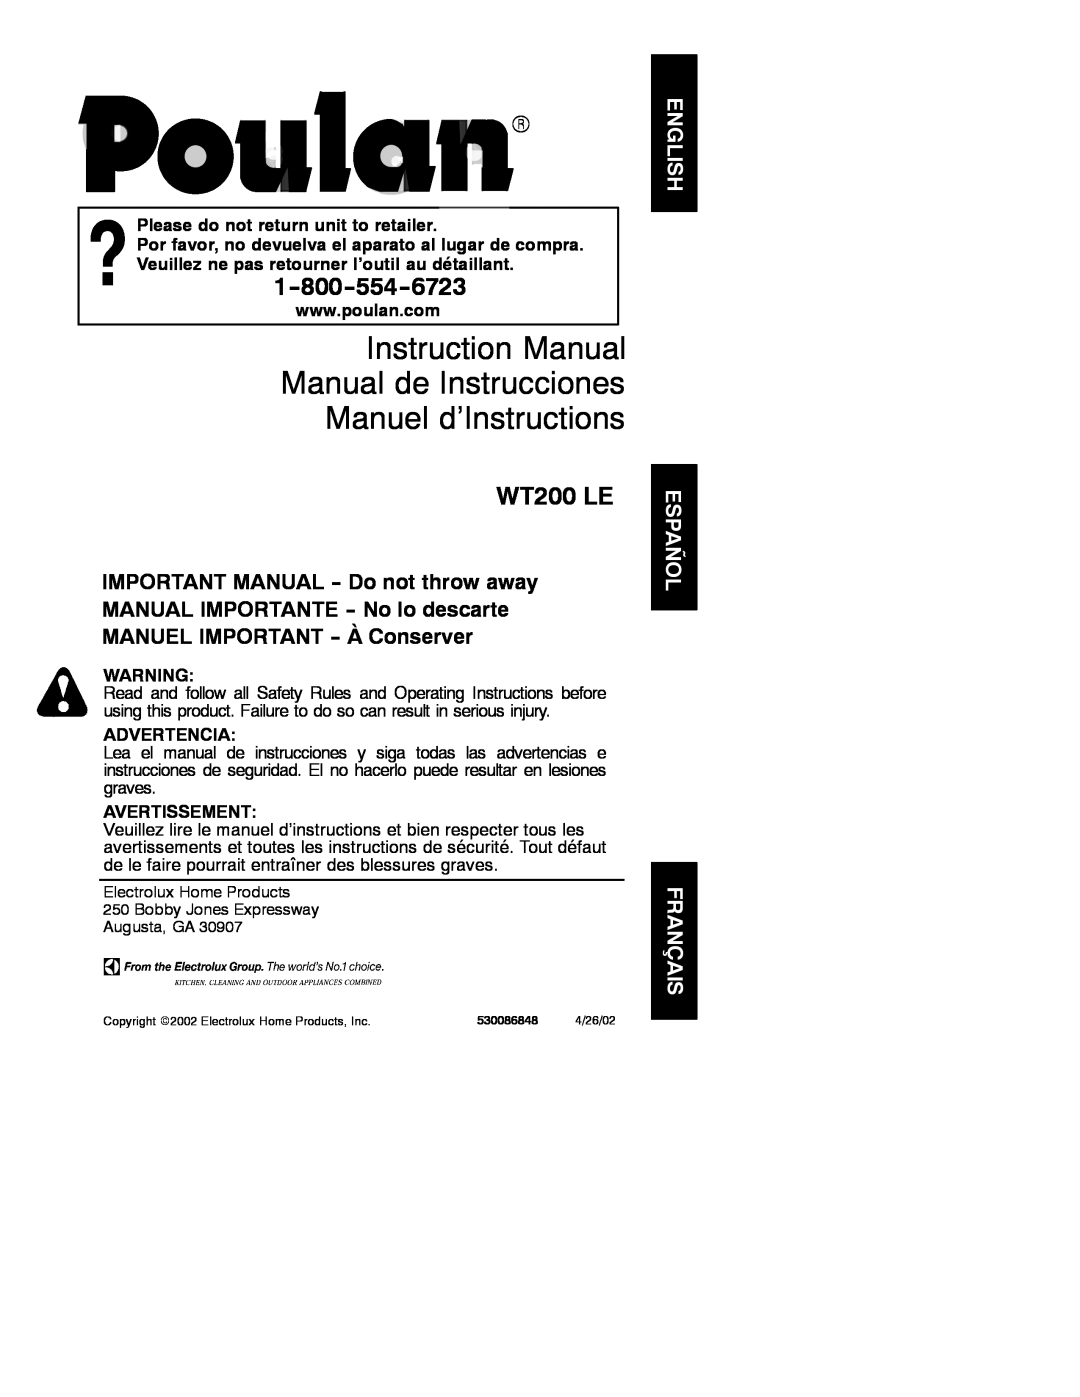 Poulan 530086848 instruction manual Manuel d’Instructions, WT200 LE, Please do not return unit to retailer, Advertencia 